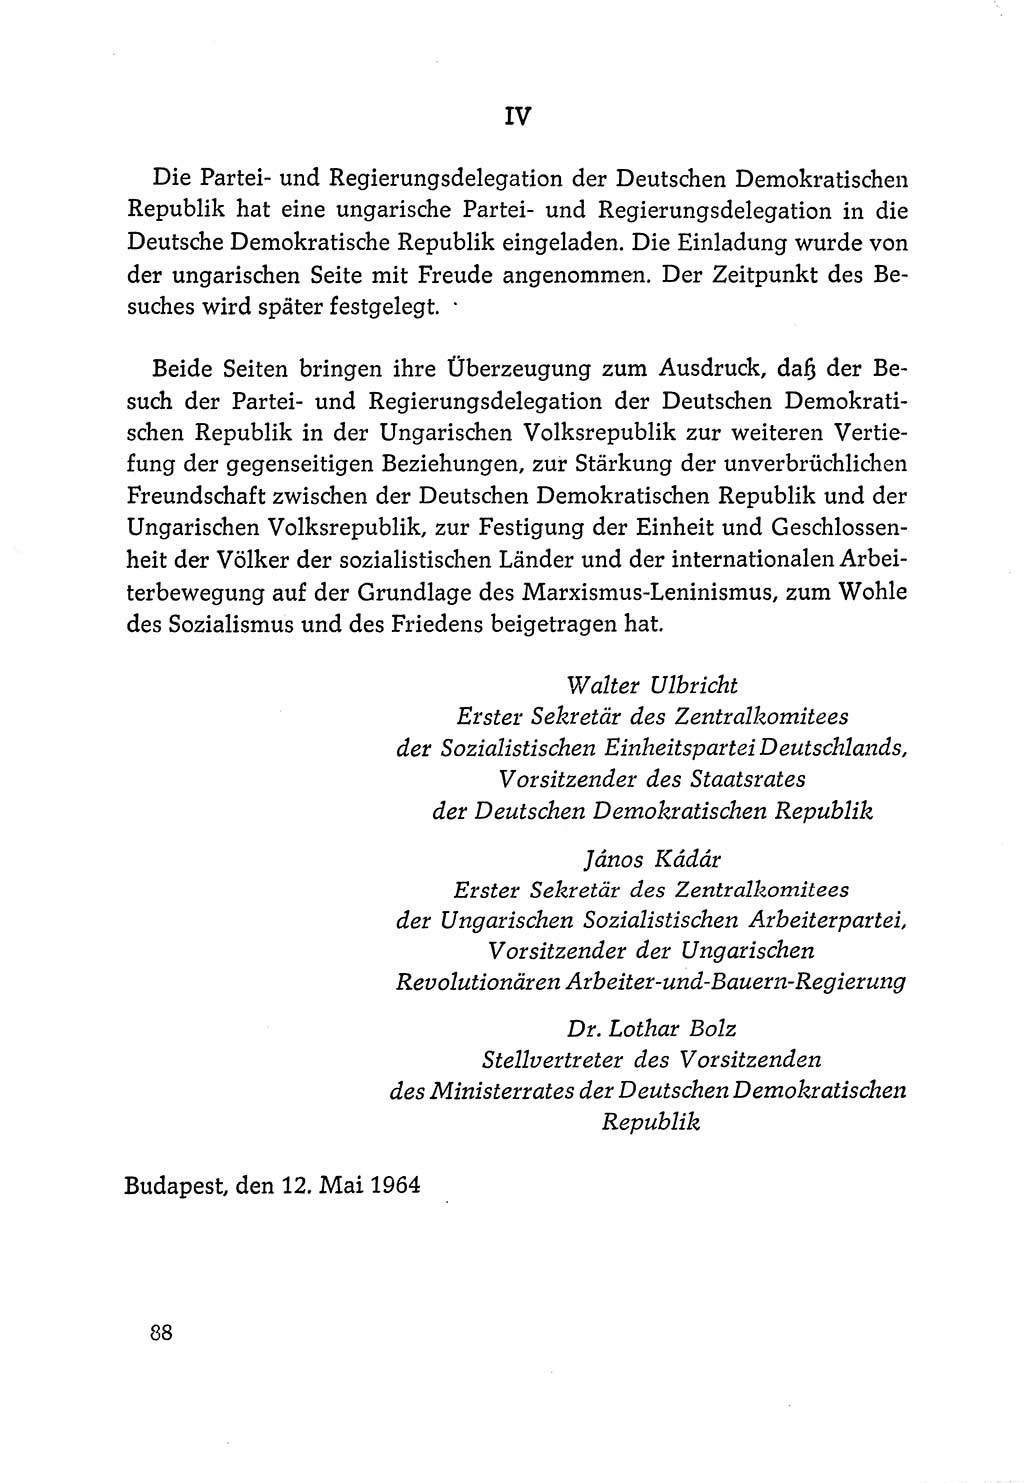 Dokumente der Sozialistischen Einheitspartei Deutschlands (SED) [Deutsche Demokratische Republik (DDR)] 1964-1965, Seite 88 (Dok. SED DDR 1964-1965, S. 88)